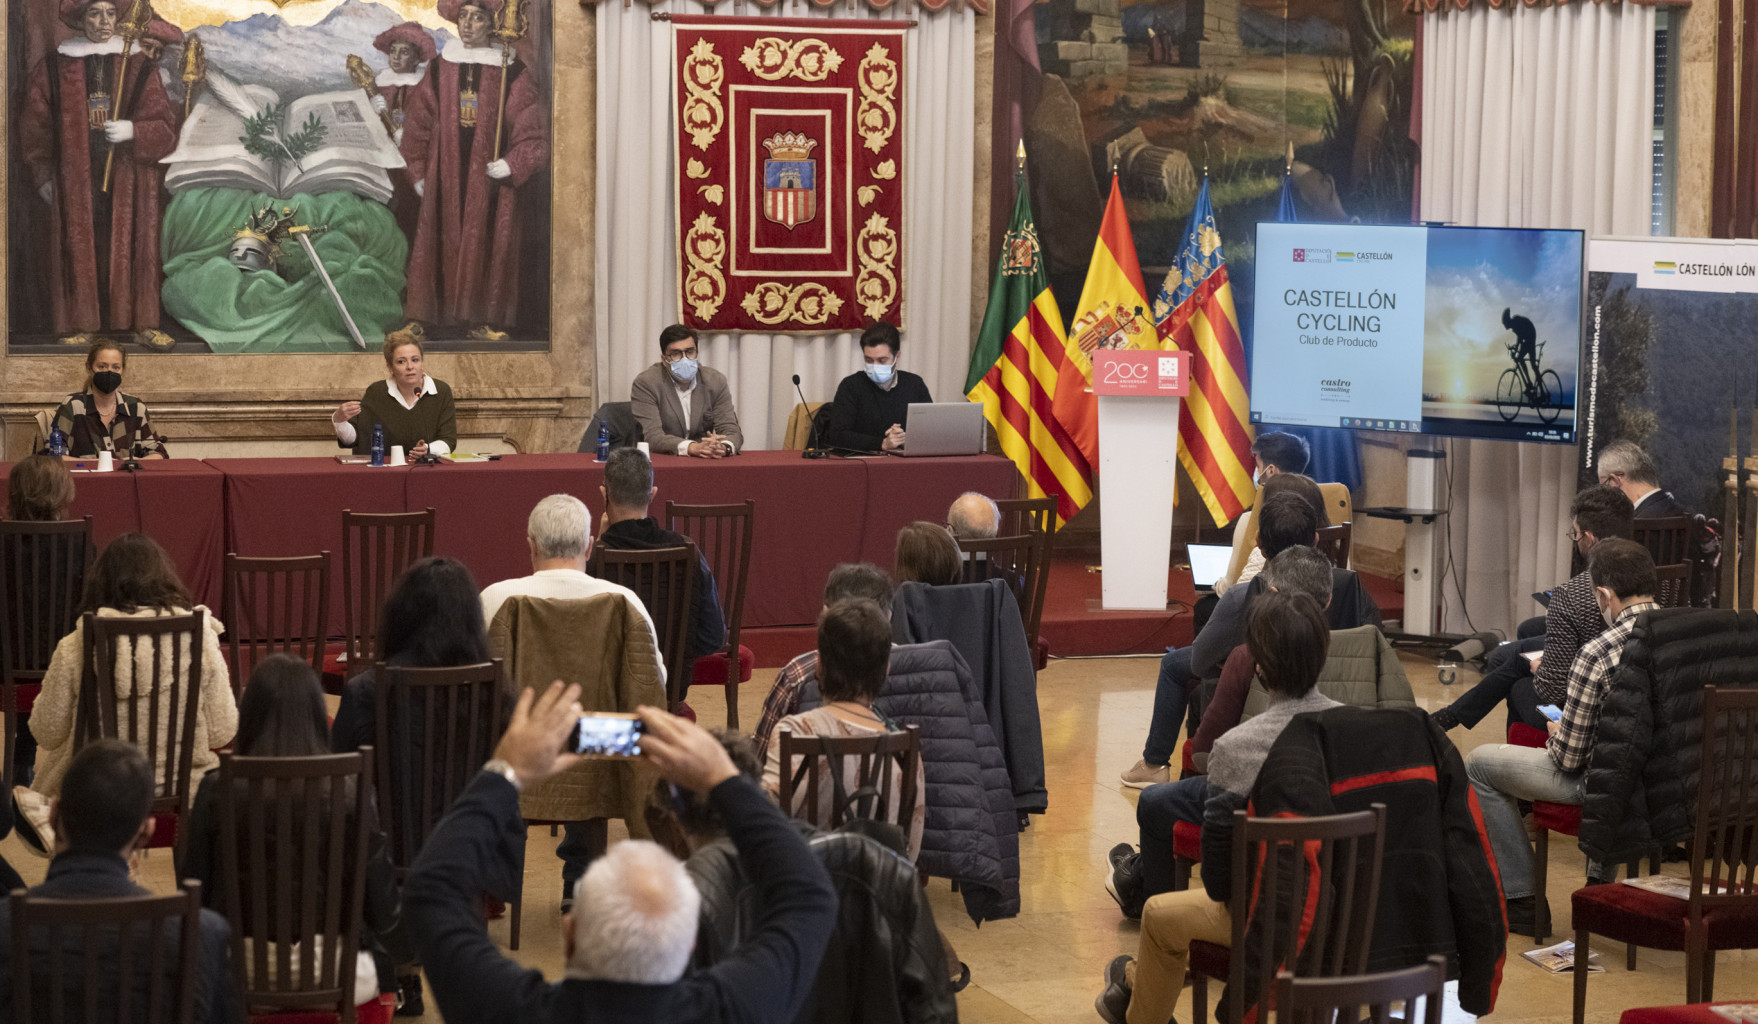 La Diputación de Castellón impulsa Castellón Cyling para crear sinergias con empresas y ayuntamientos